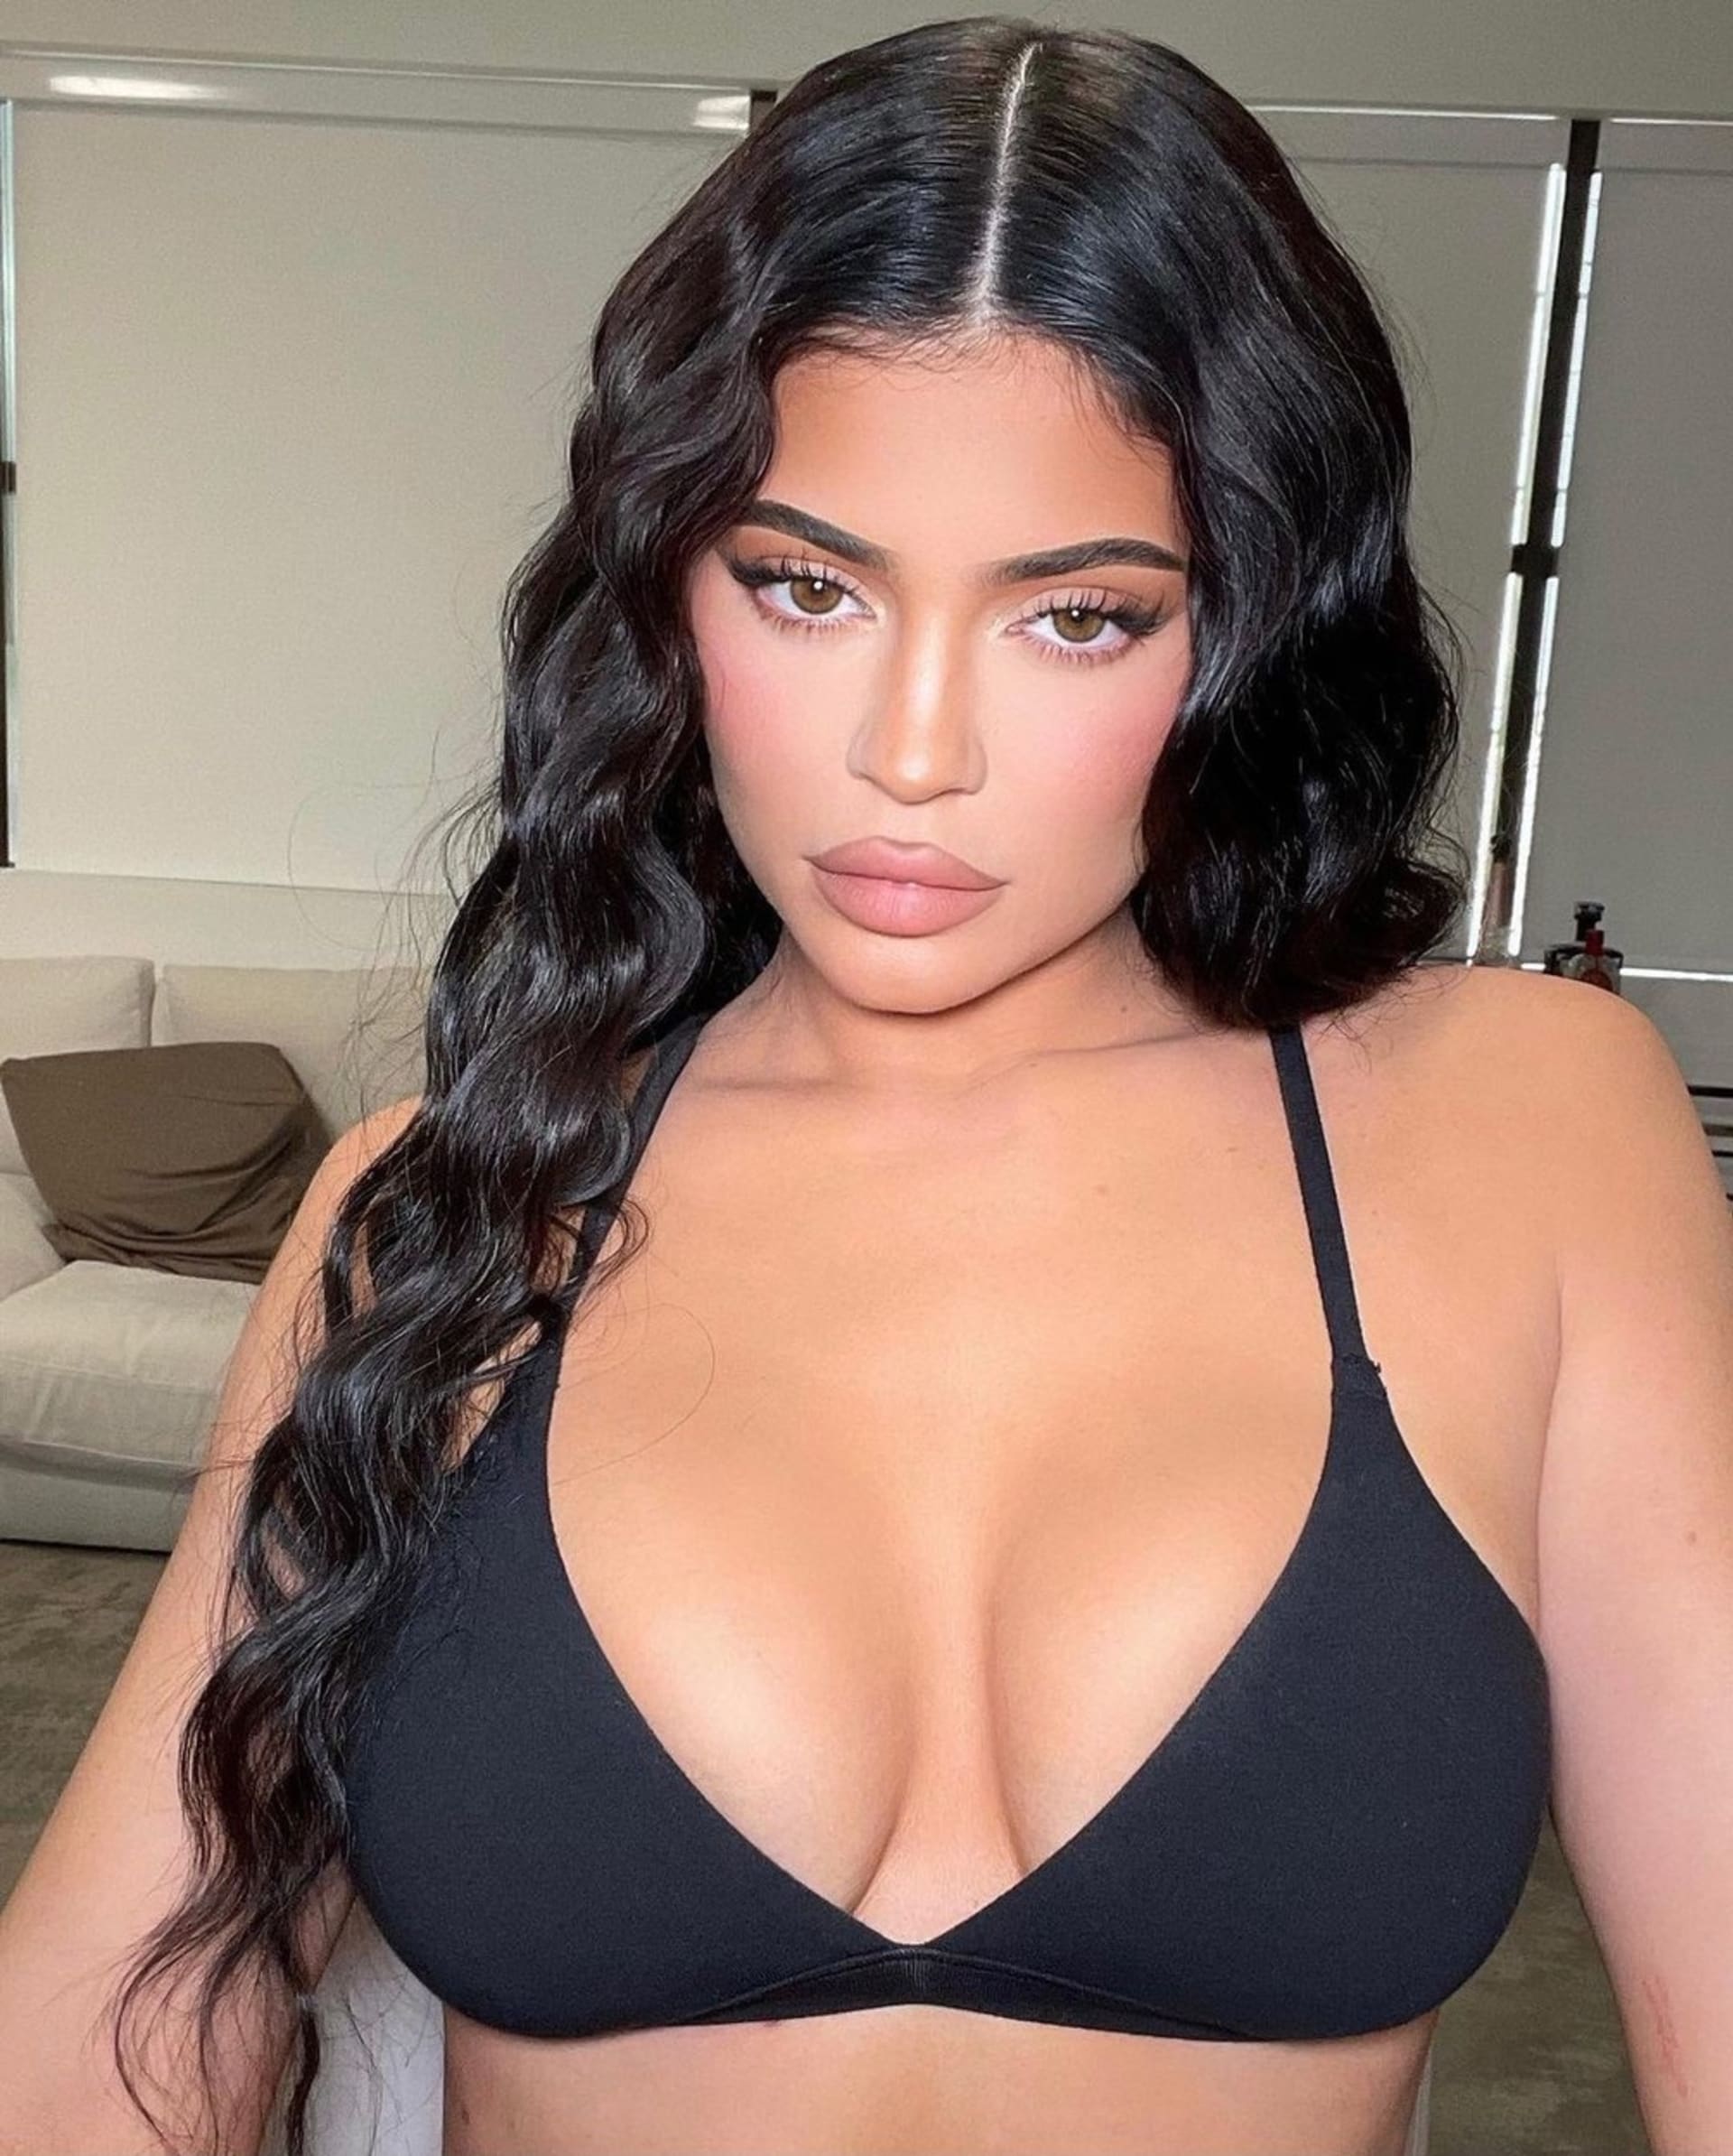 Kylie Jenner si v 19 letech nechala zvětšit prsa a jen půl roku po operaci otěhotněla. Dnes plastiky lituje a doporučuje všem ženám, které ji chtějí, aby počkaly až po dětech.